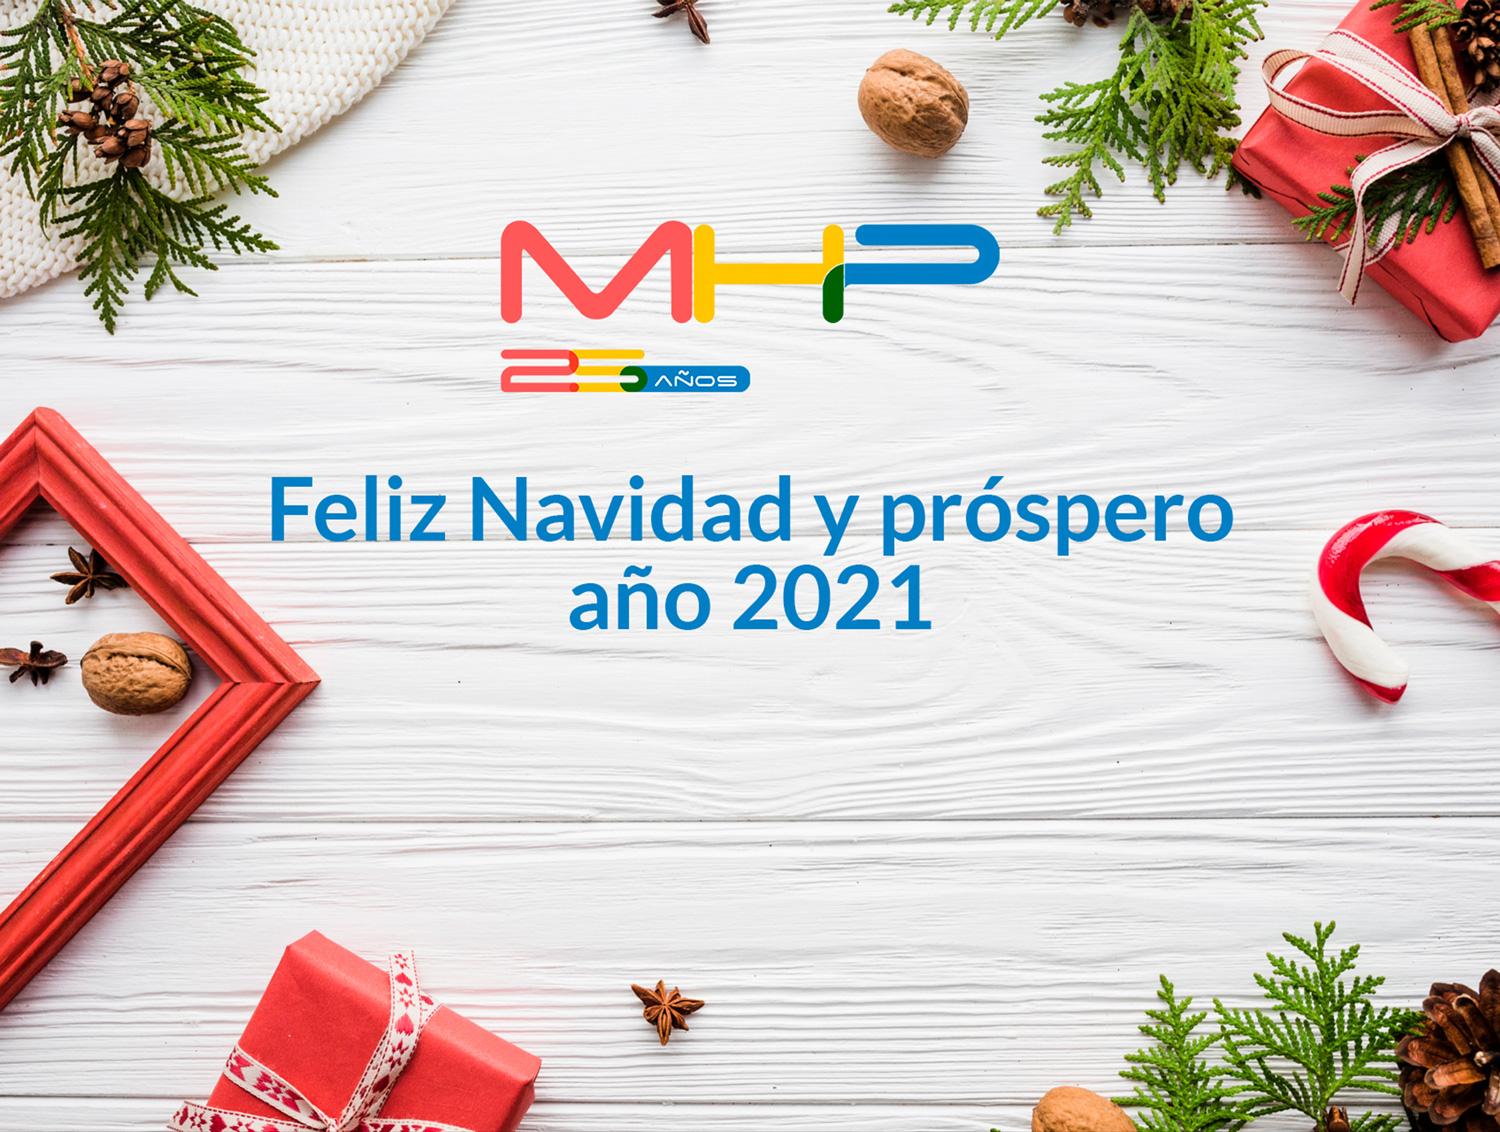 MHP te desea Feliz Navidad y próspero Año 2021 (este post lleva sorpresa ;-)